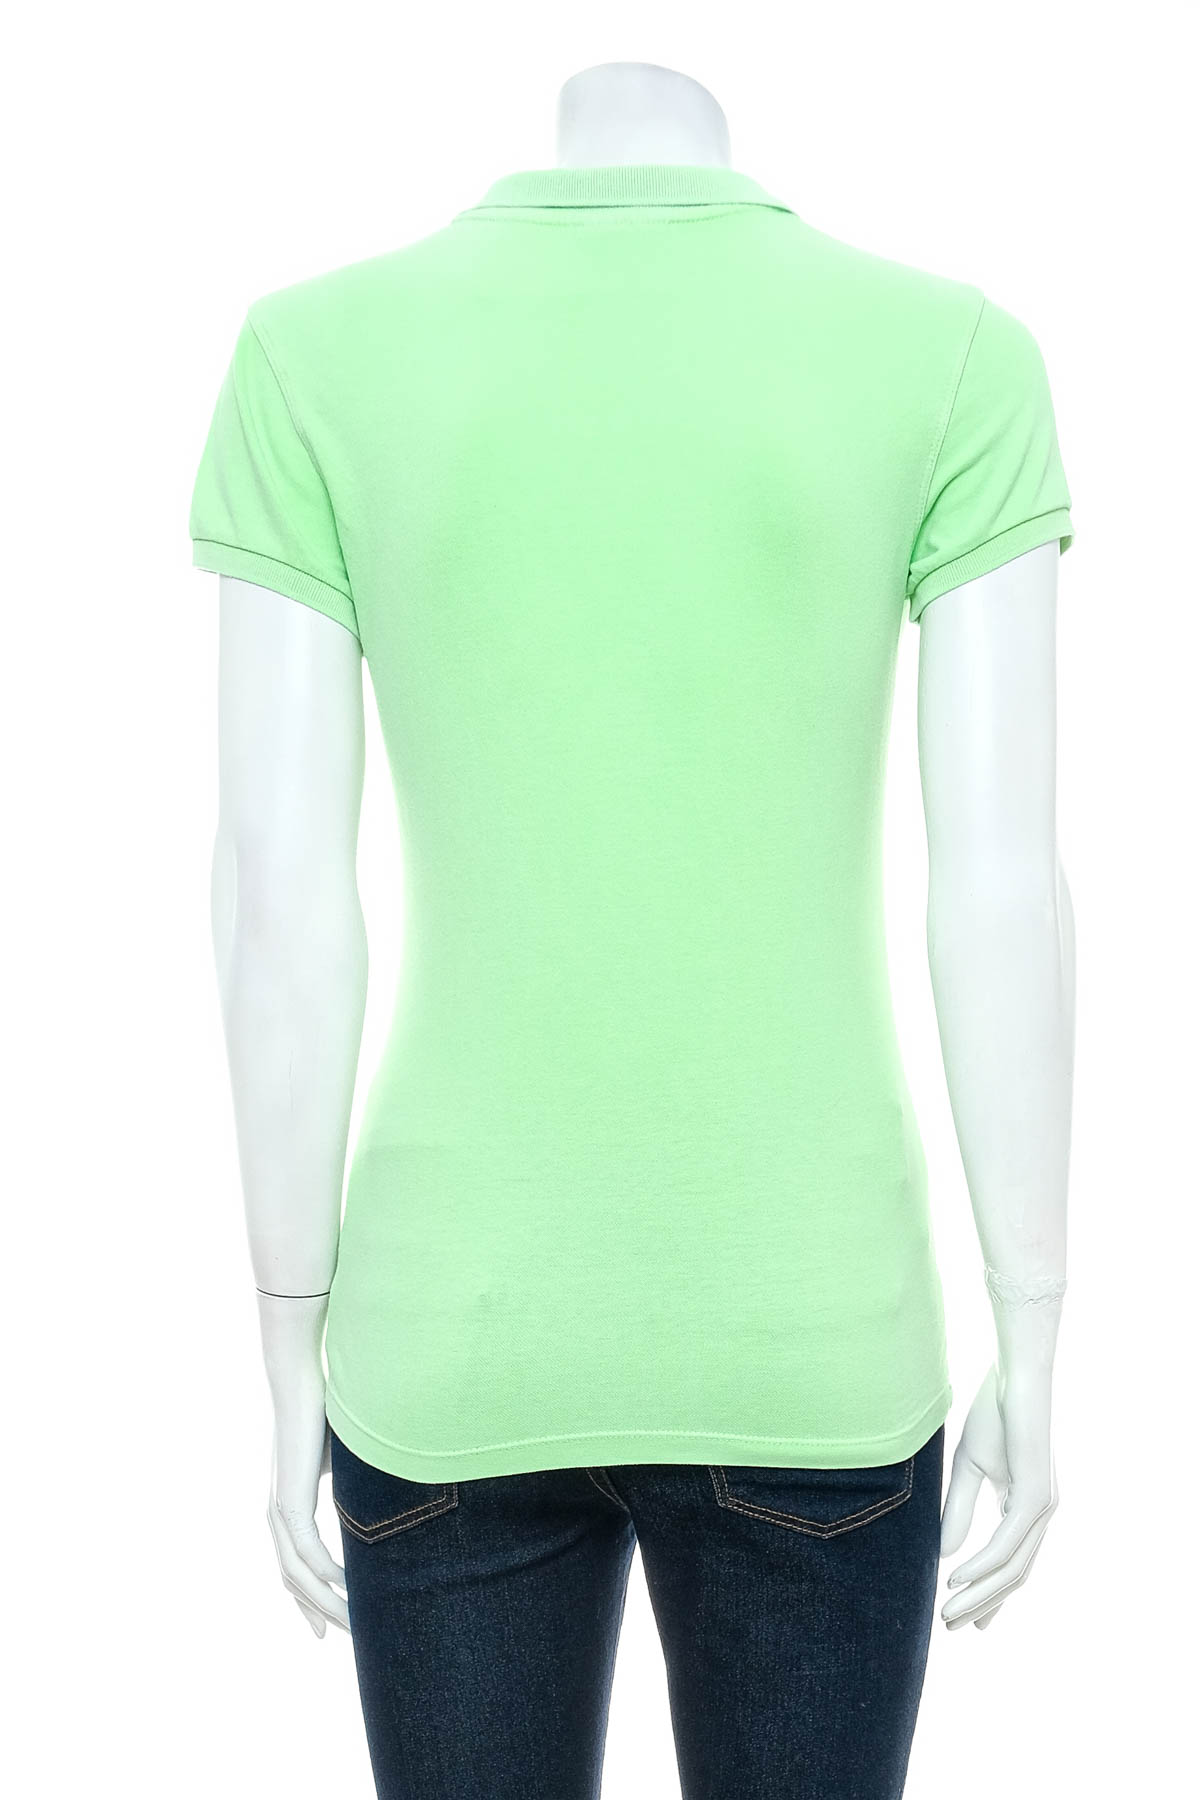 Γυναικεία μπλούζα - U.S. Polo ASSN. - 1